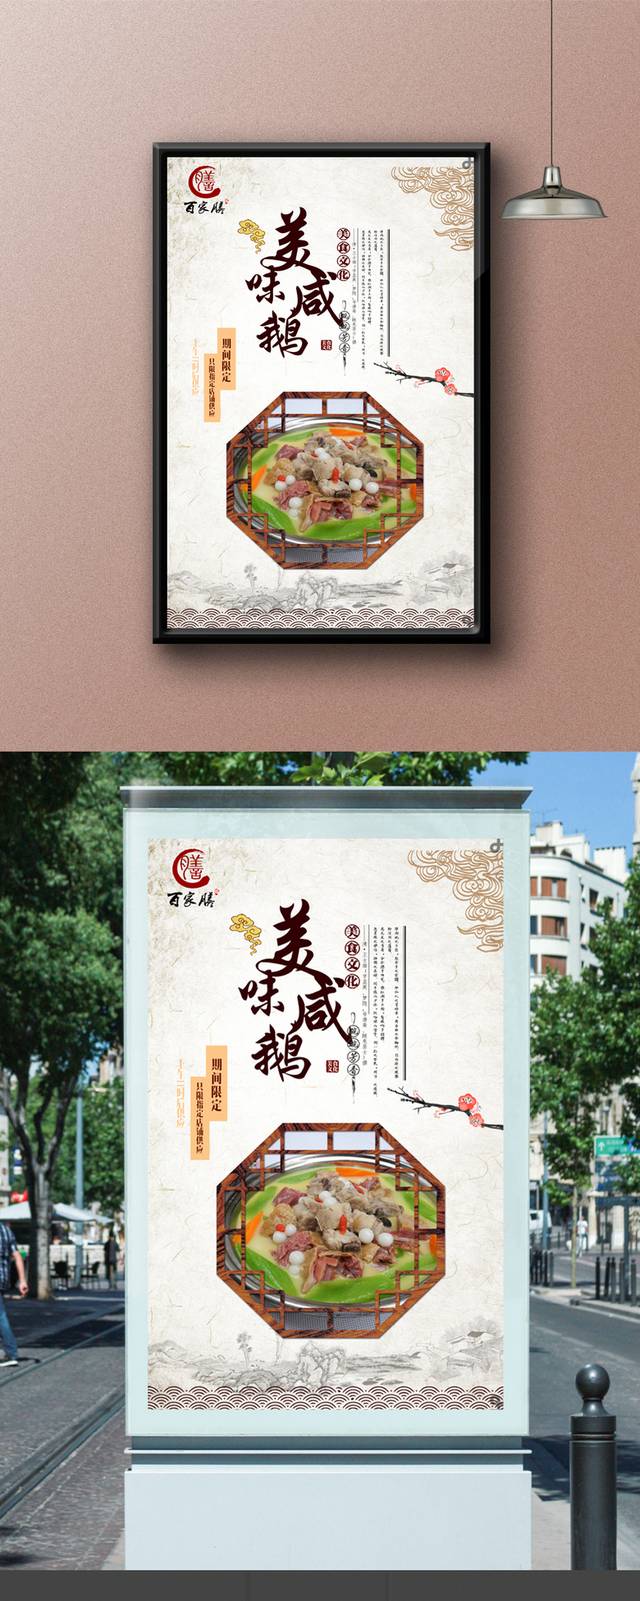 中国风高档咸鹅宣传海报设计